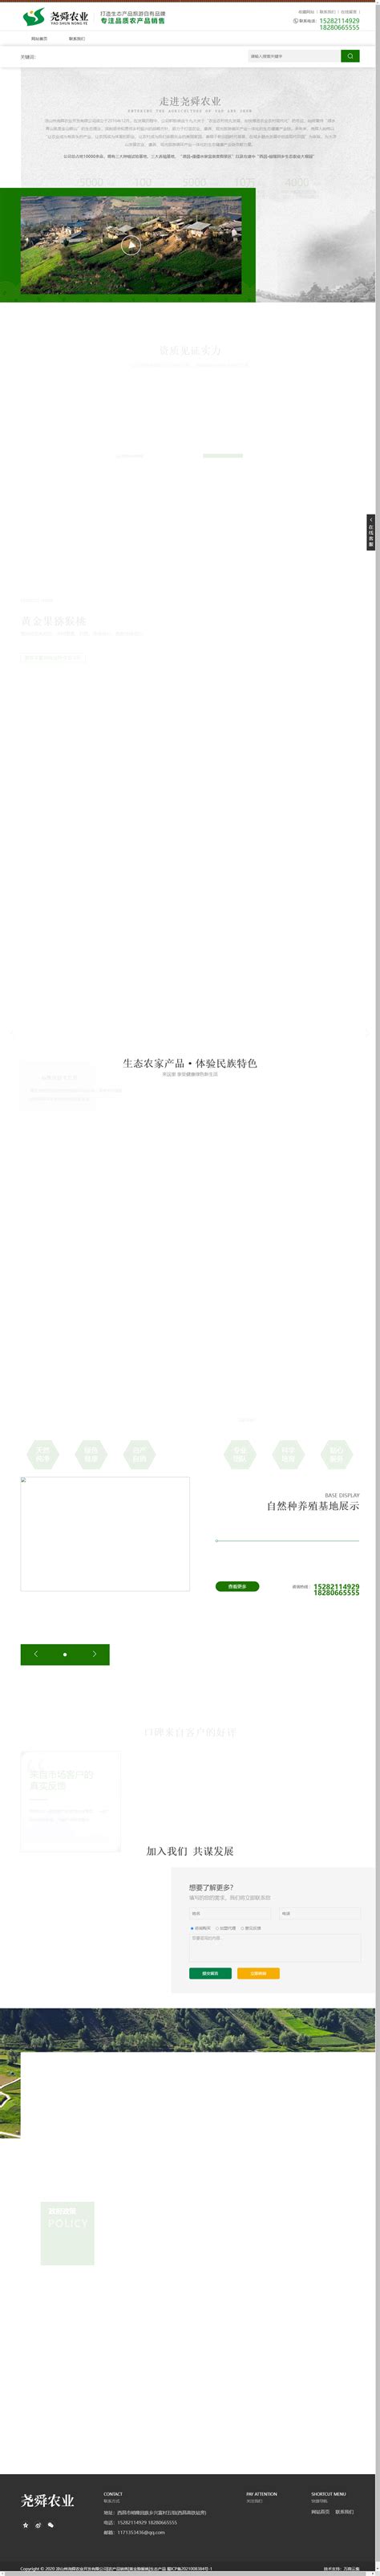 凉山2017旅游形象LOGO征集——优秀投稿作品展示第一弹-设计揭晓-设计大赛网